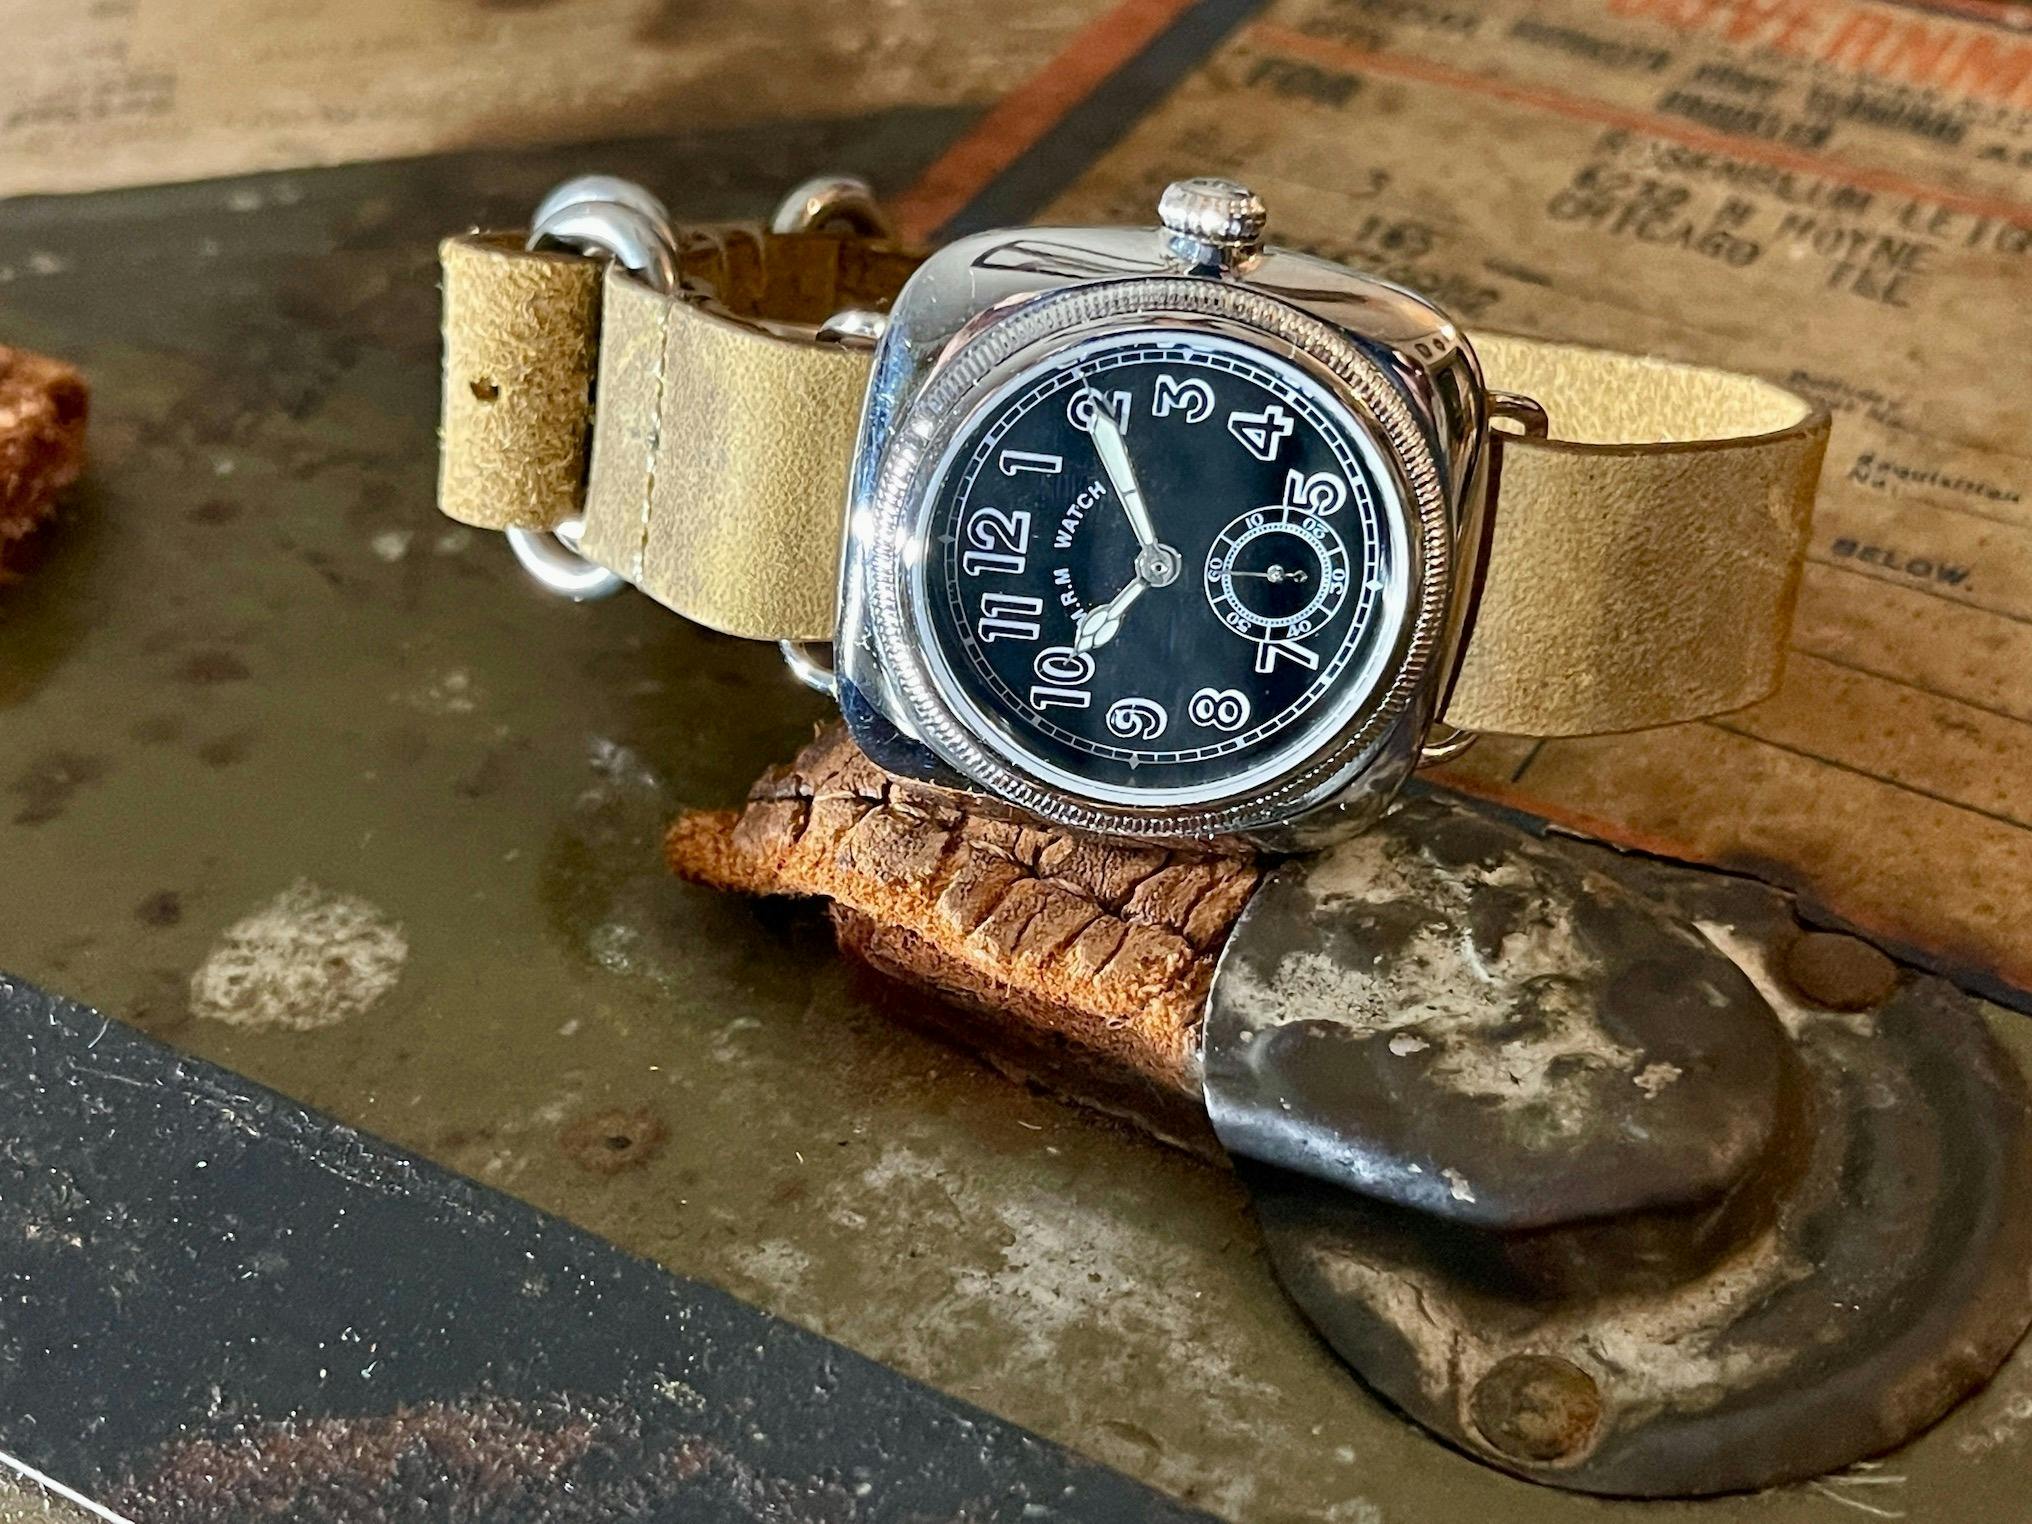 アンティーク腕時計の名作 1930年代クッションウォッチを復刻!